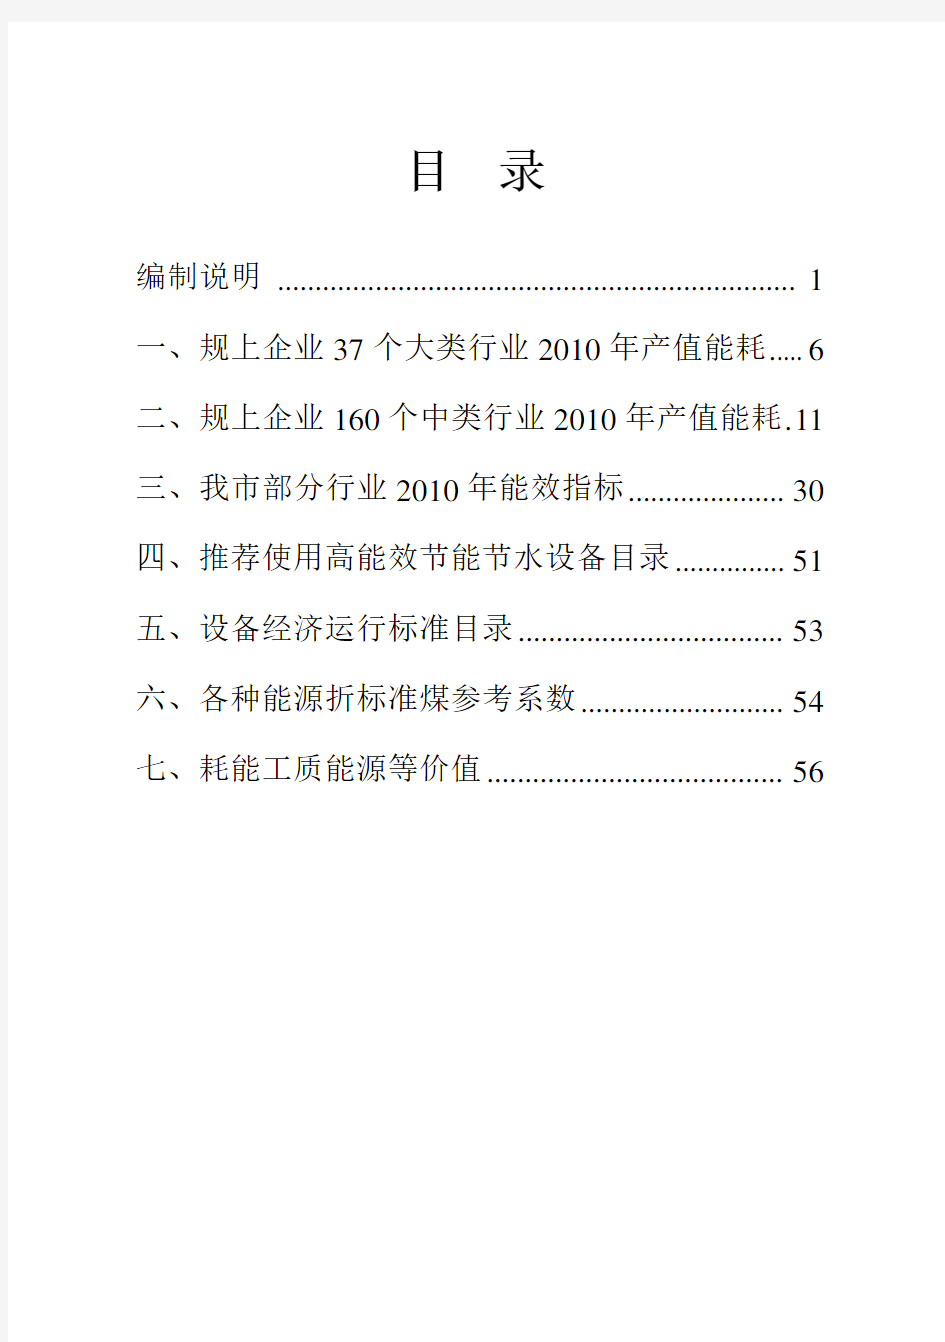 武汉市产业能效指南(2011版)2011.12.23